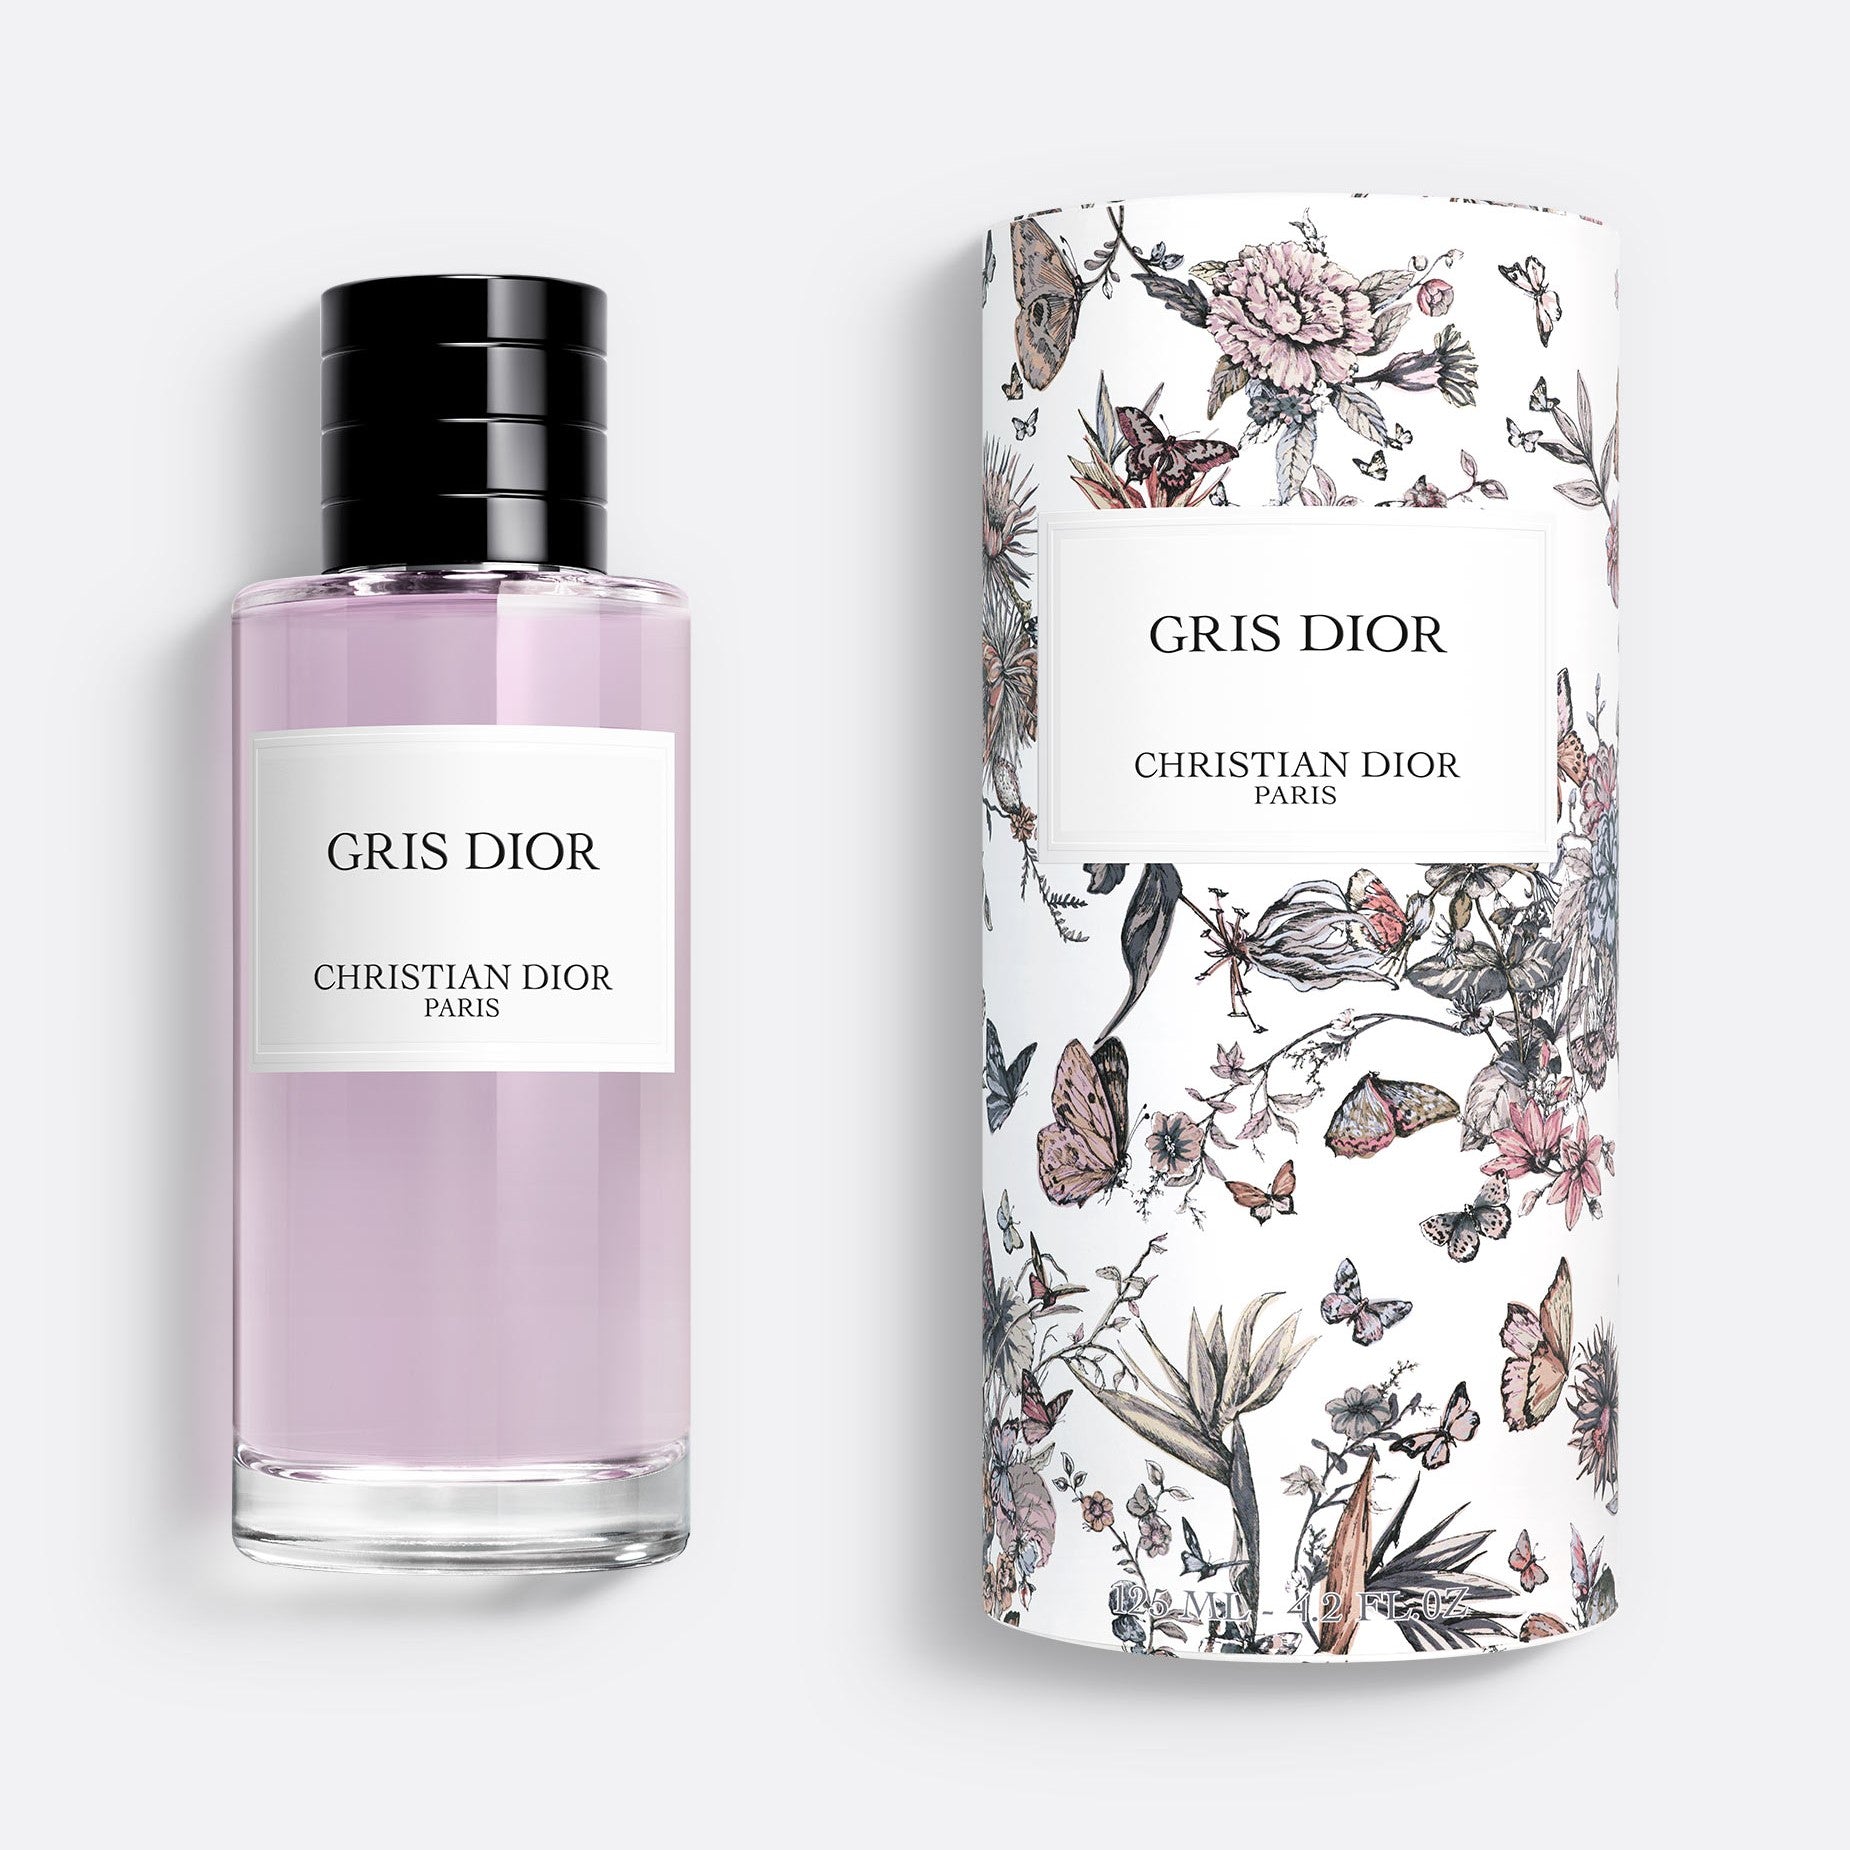 GRIS DIOR – LIMITED EDITION | Unisex Eau de Parfum – Floral and Chypre Notes